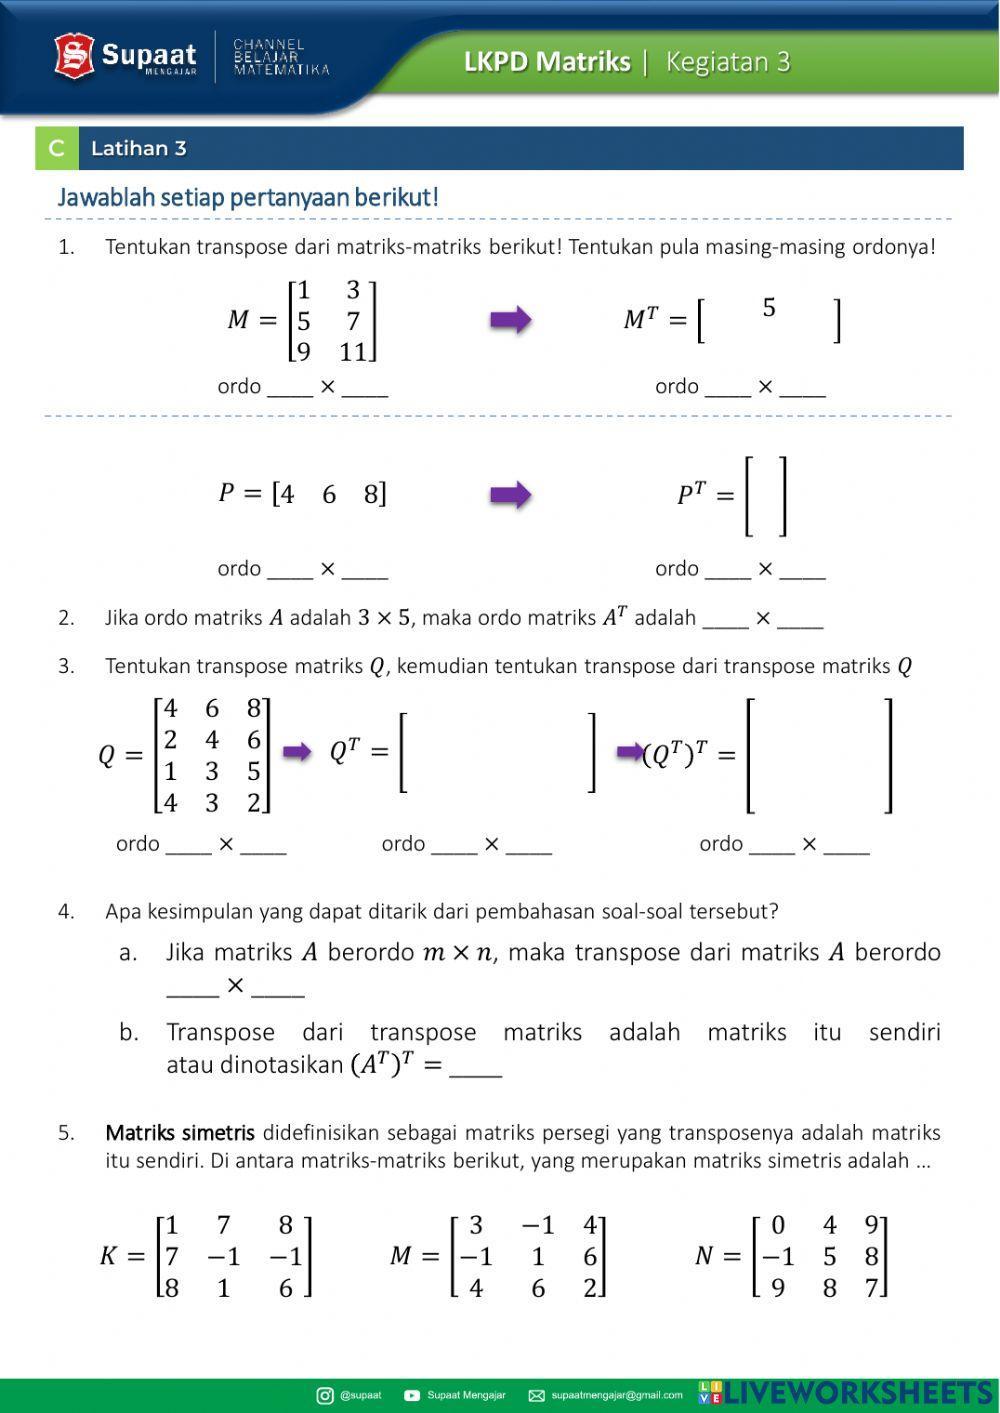 LKPD Matriks - Kegiatan 3 - Transpose dan Kesamaan Matriks